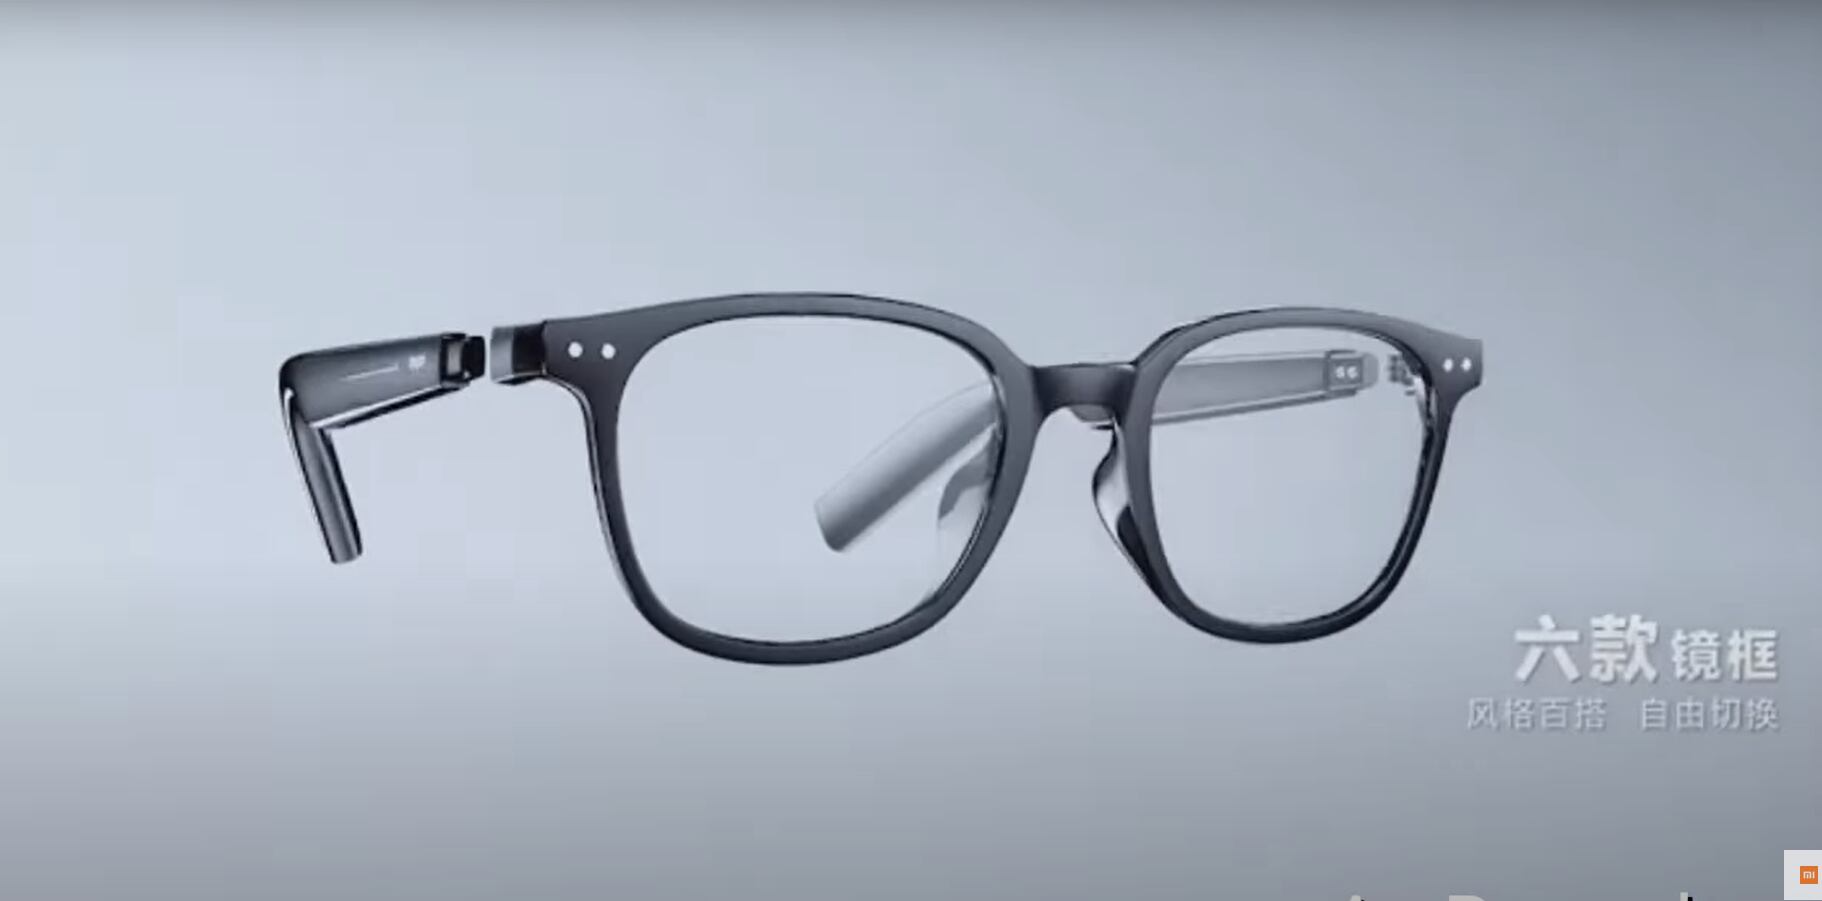 xiaomi prepara unos anteojos inteligentes sacados de una película de ciencia ficción, aunque se ven muy normales